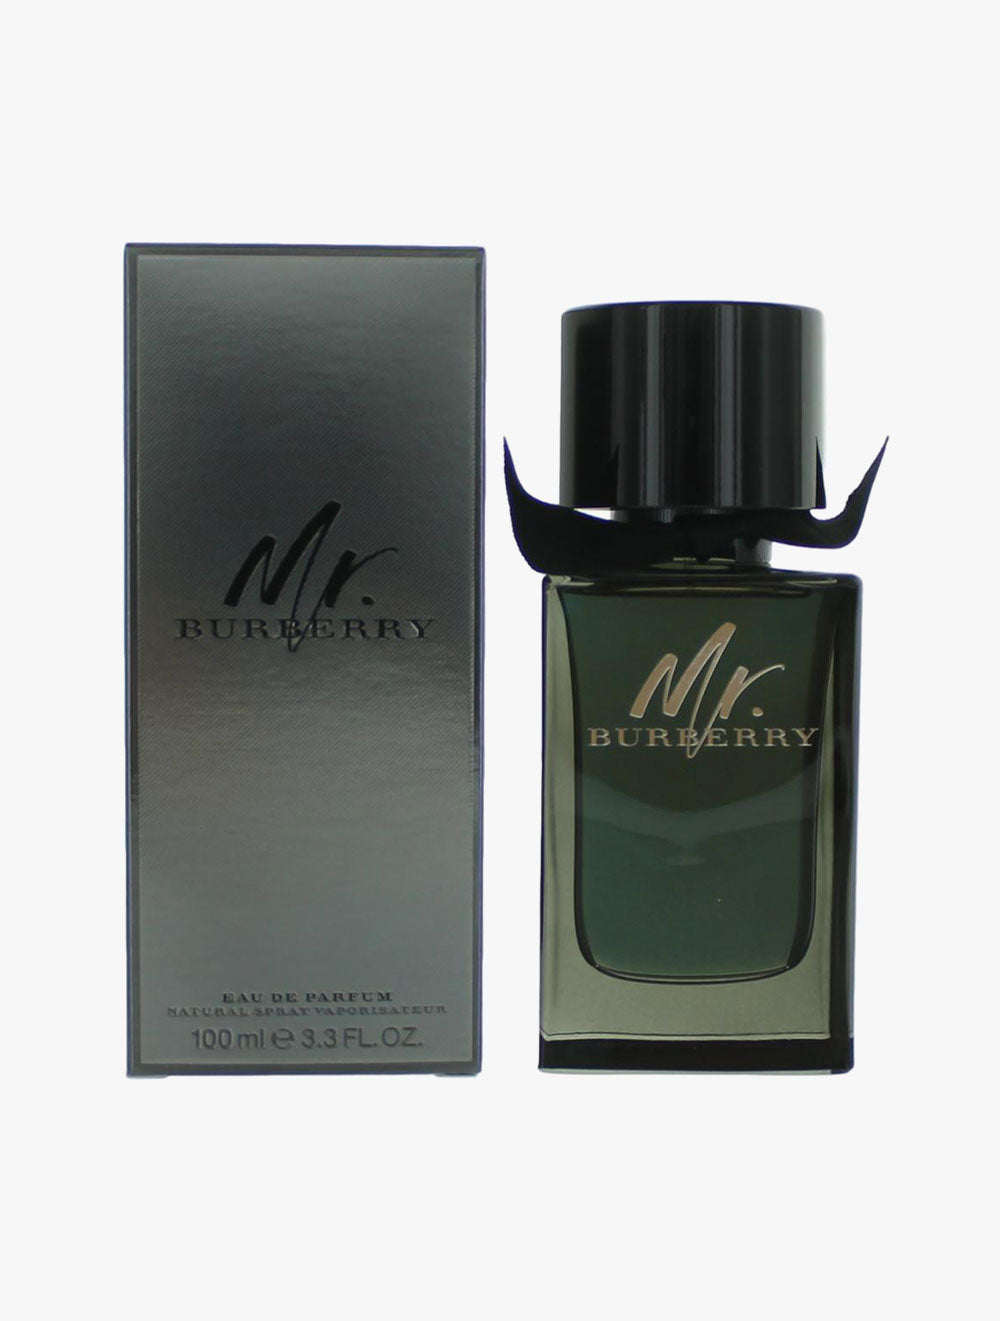 Burberry MR. BURBERRY Eau De Parfum